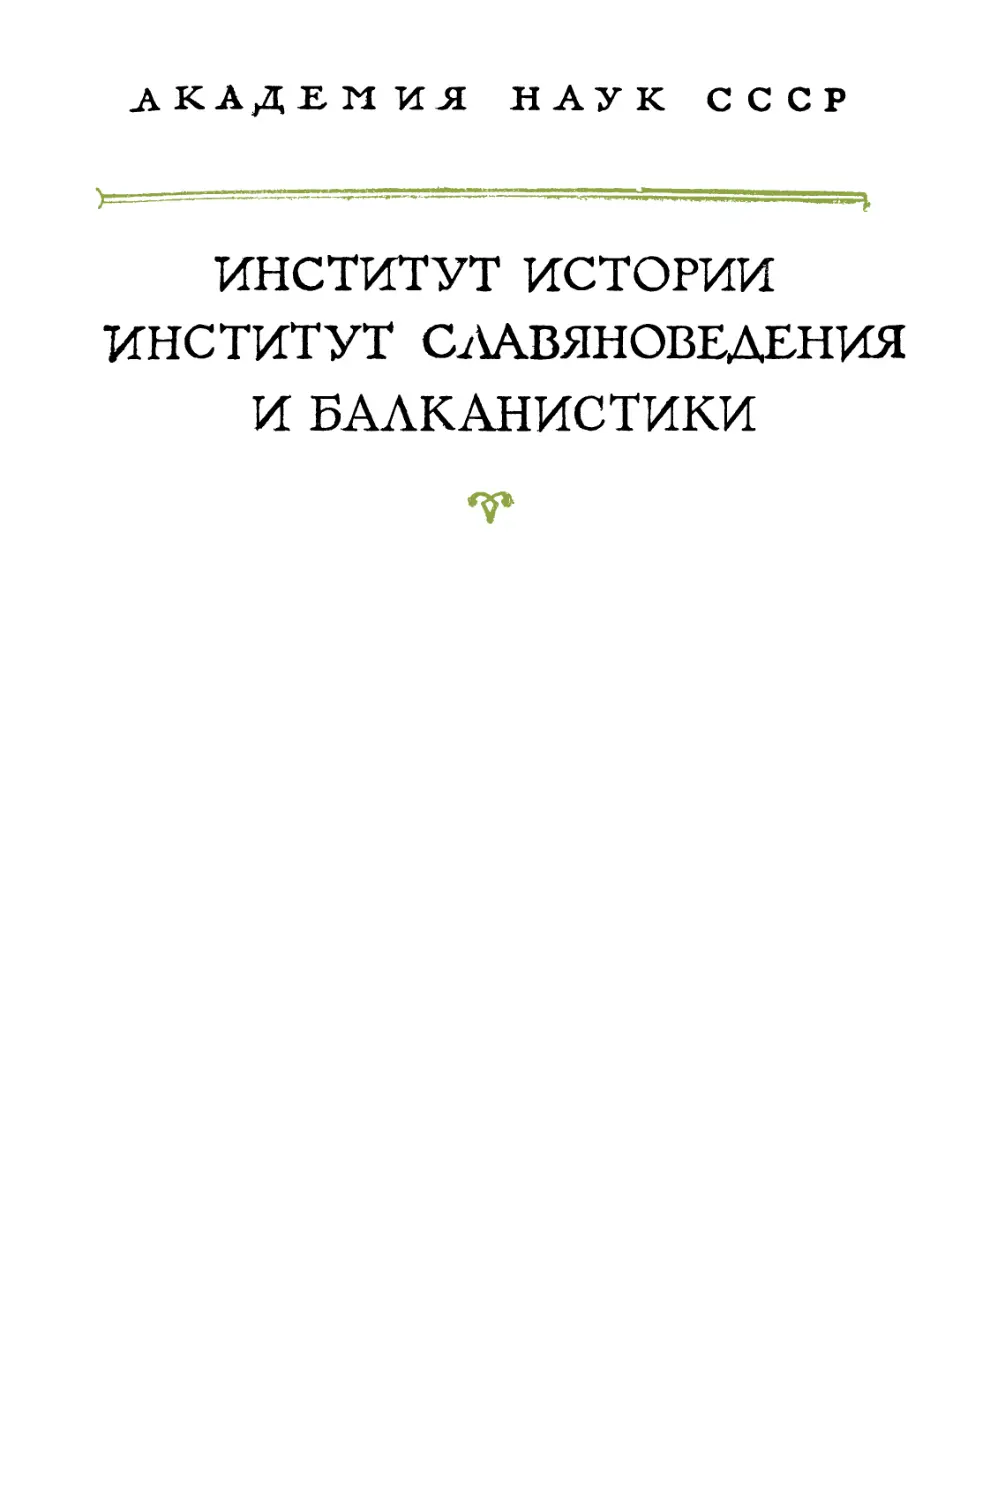 Советы и рассказы Кекавмена. Сочинение византийского полководца ХI века - 1972